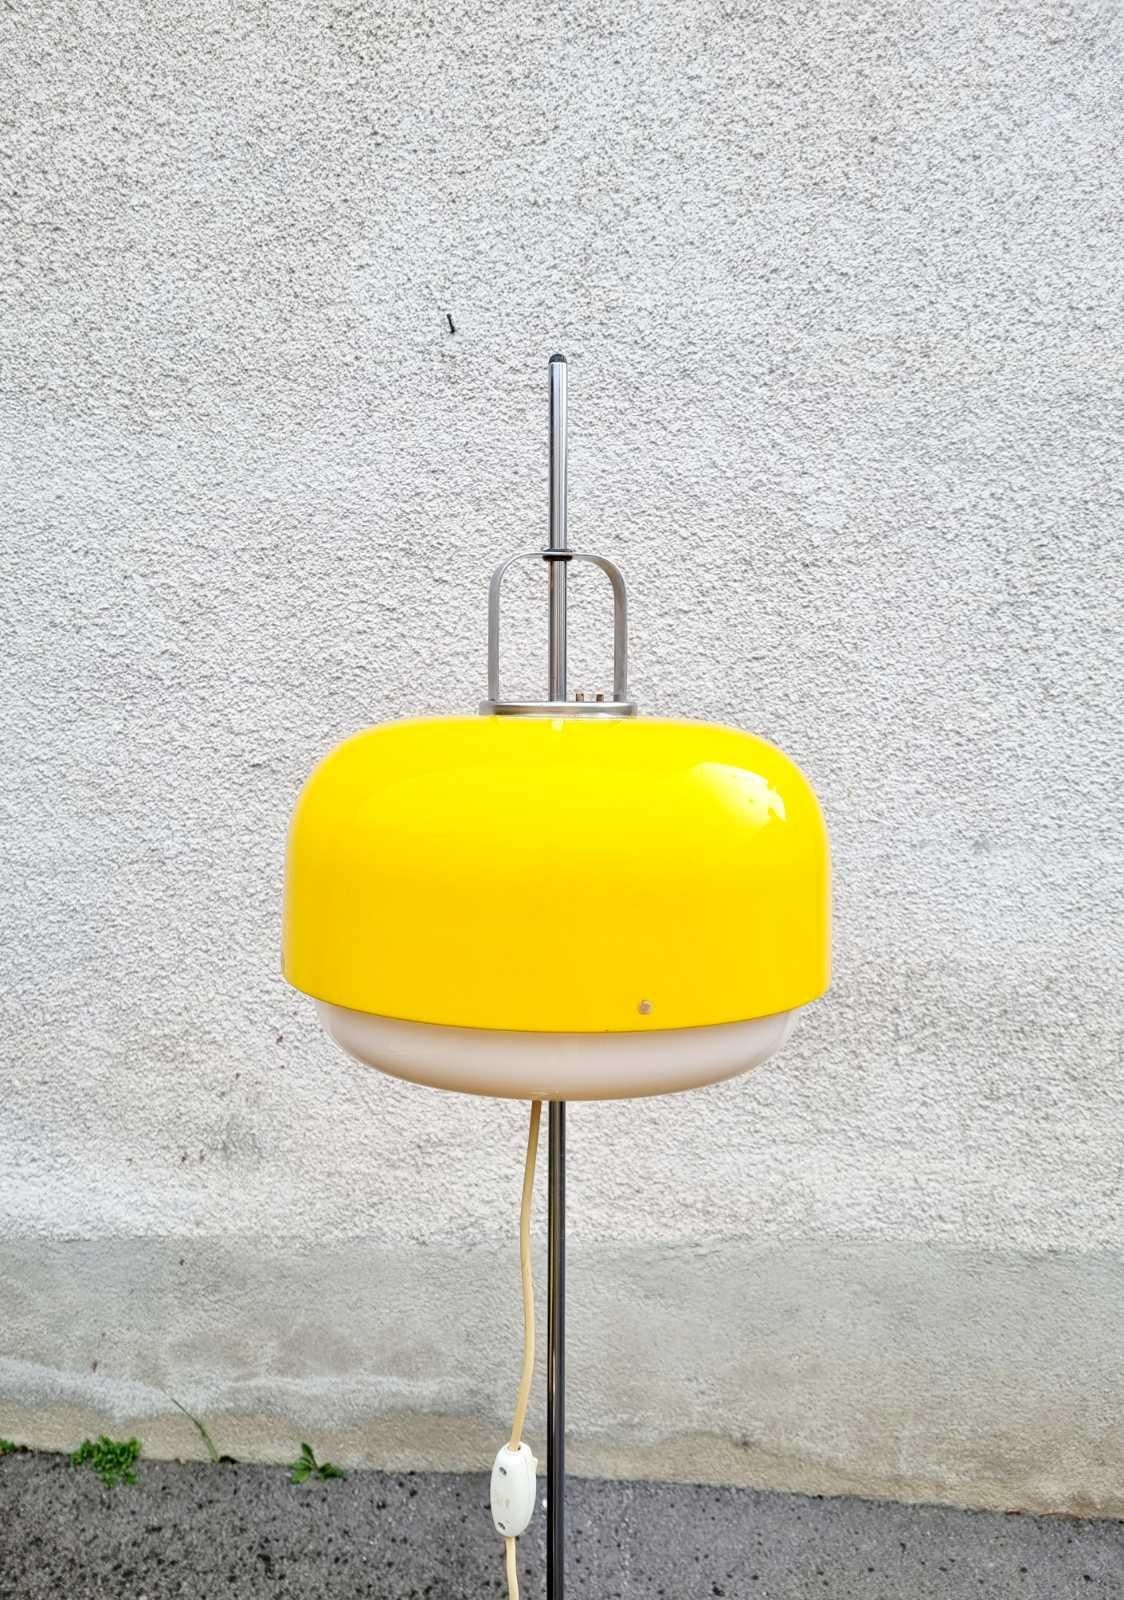 Rare lampadaire jaune Medusa, conçu par Luigi Massoni pour Guzzini

en parfait état d'origine